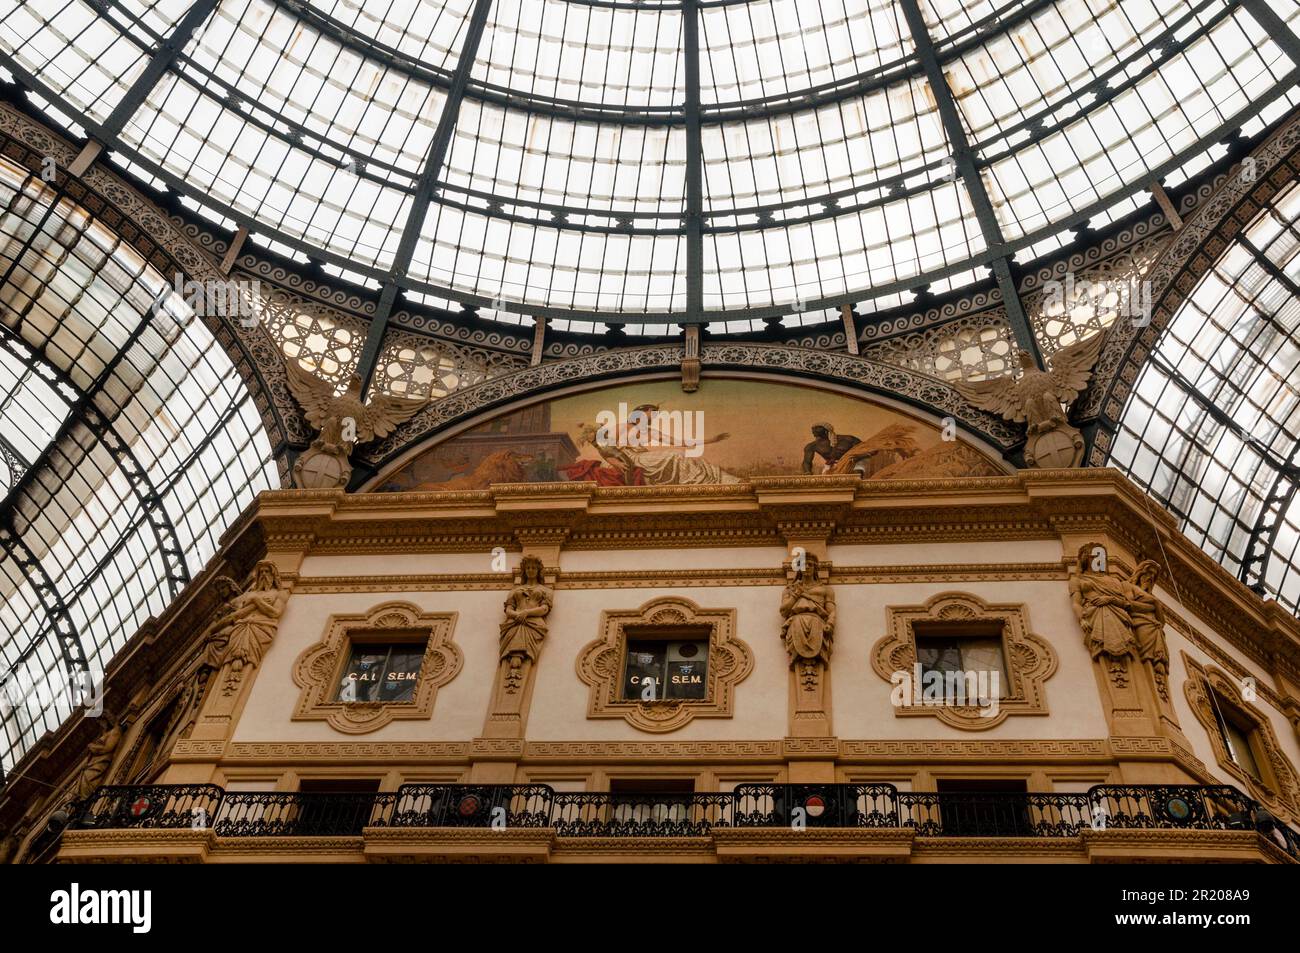 Decke und Kuppel aus Eisen und Glas sowie eine Lünette mit Mosaikallegorie von Afrika in der Galleria Vittorio Emanuele II in Mailand, Italien. Stockfoto